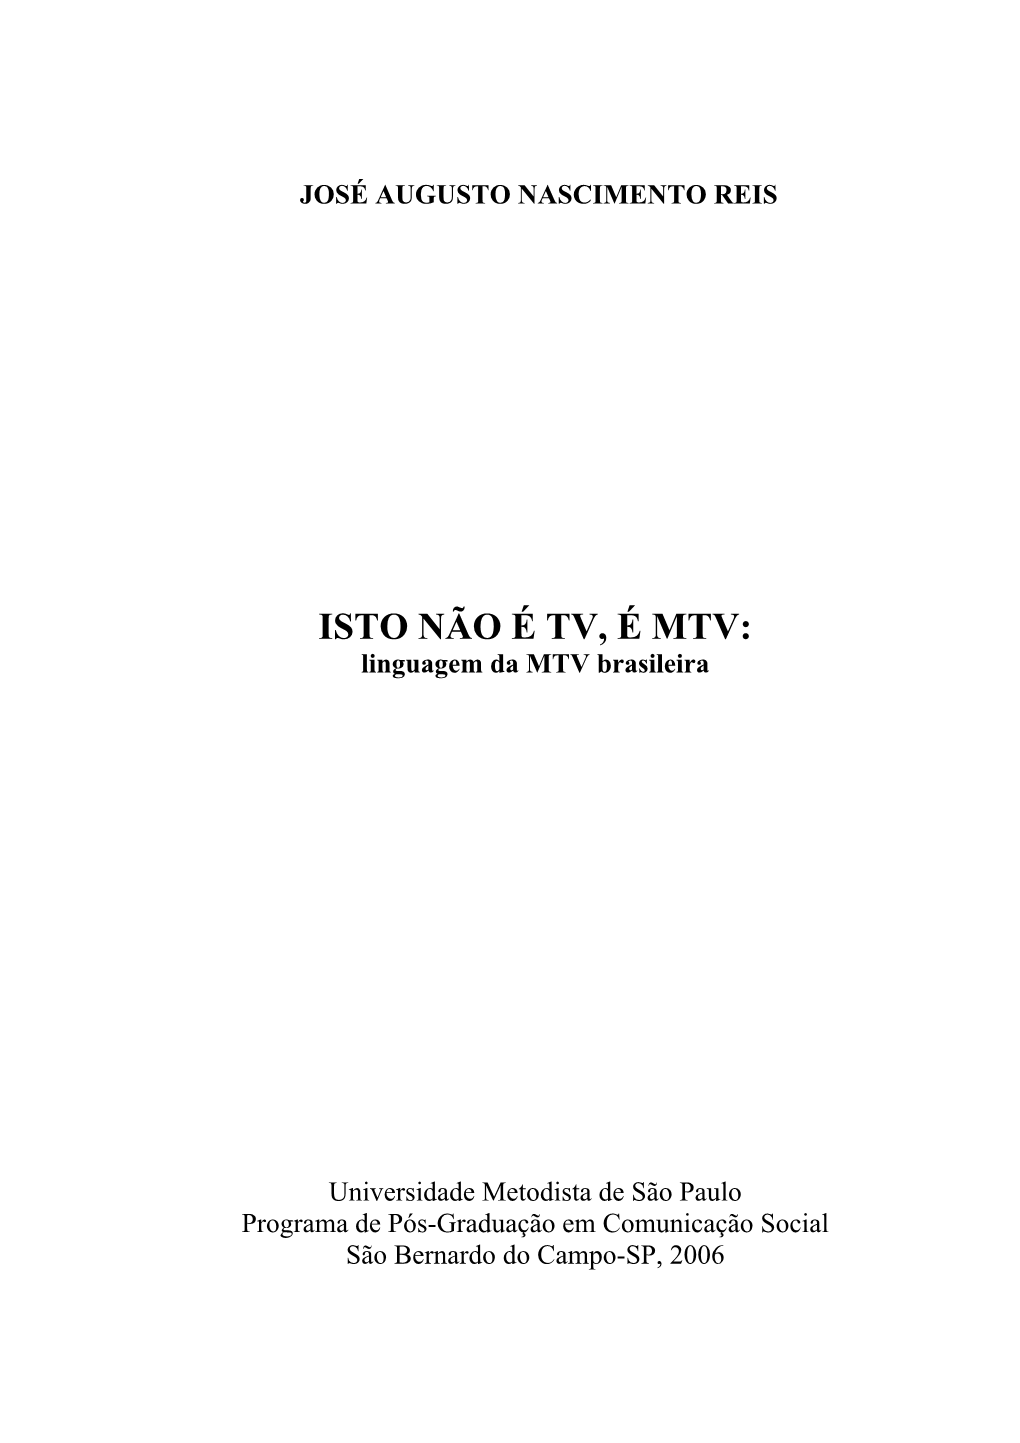 ISTO NÃO É TV, É MTV: Linguagem Da MTV Brasileira